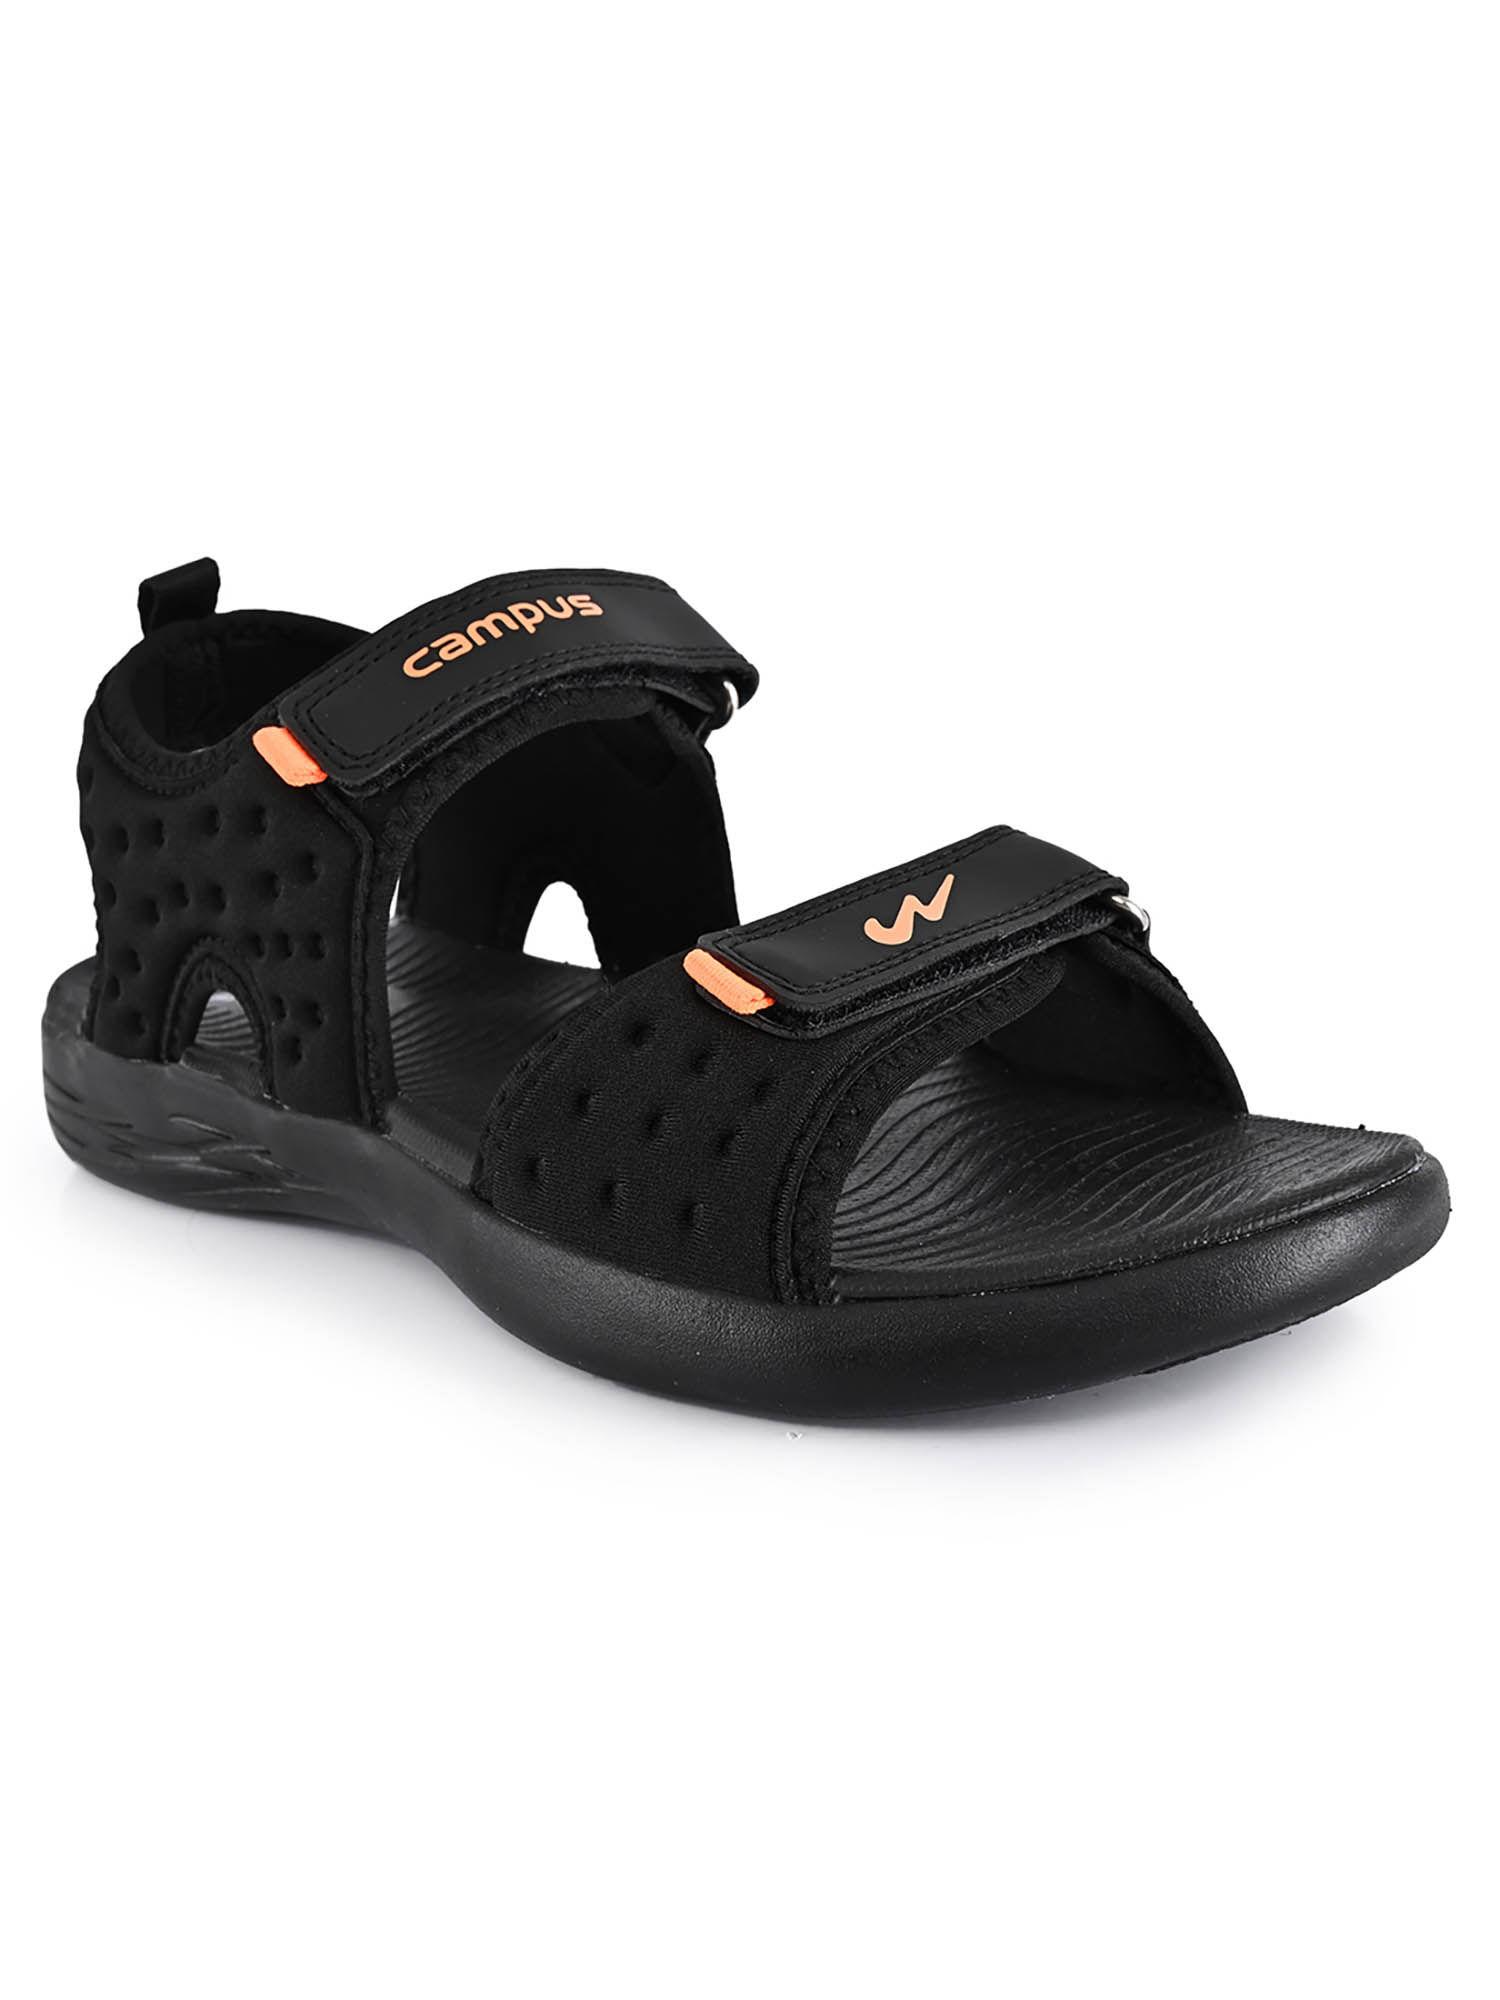 3k-901 black sandals for men